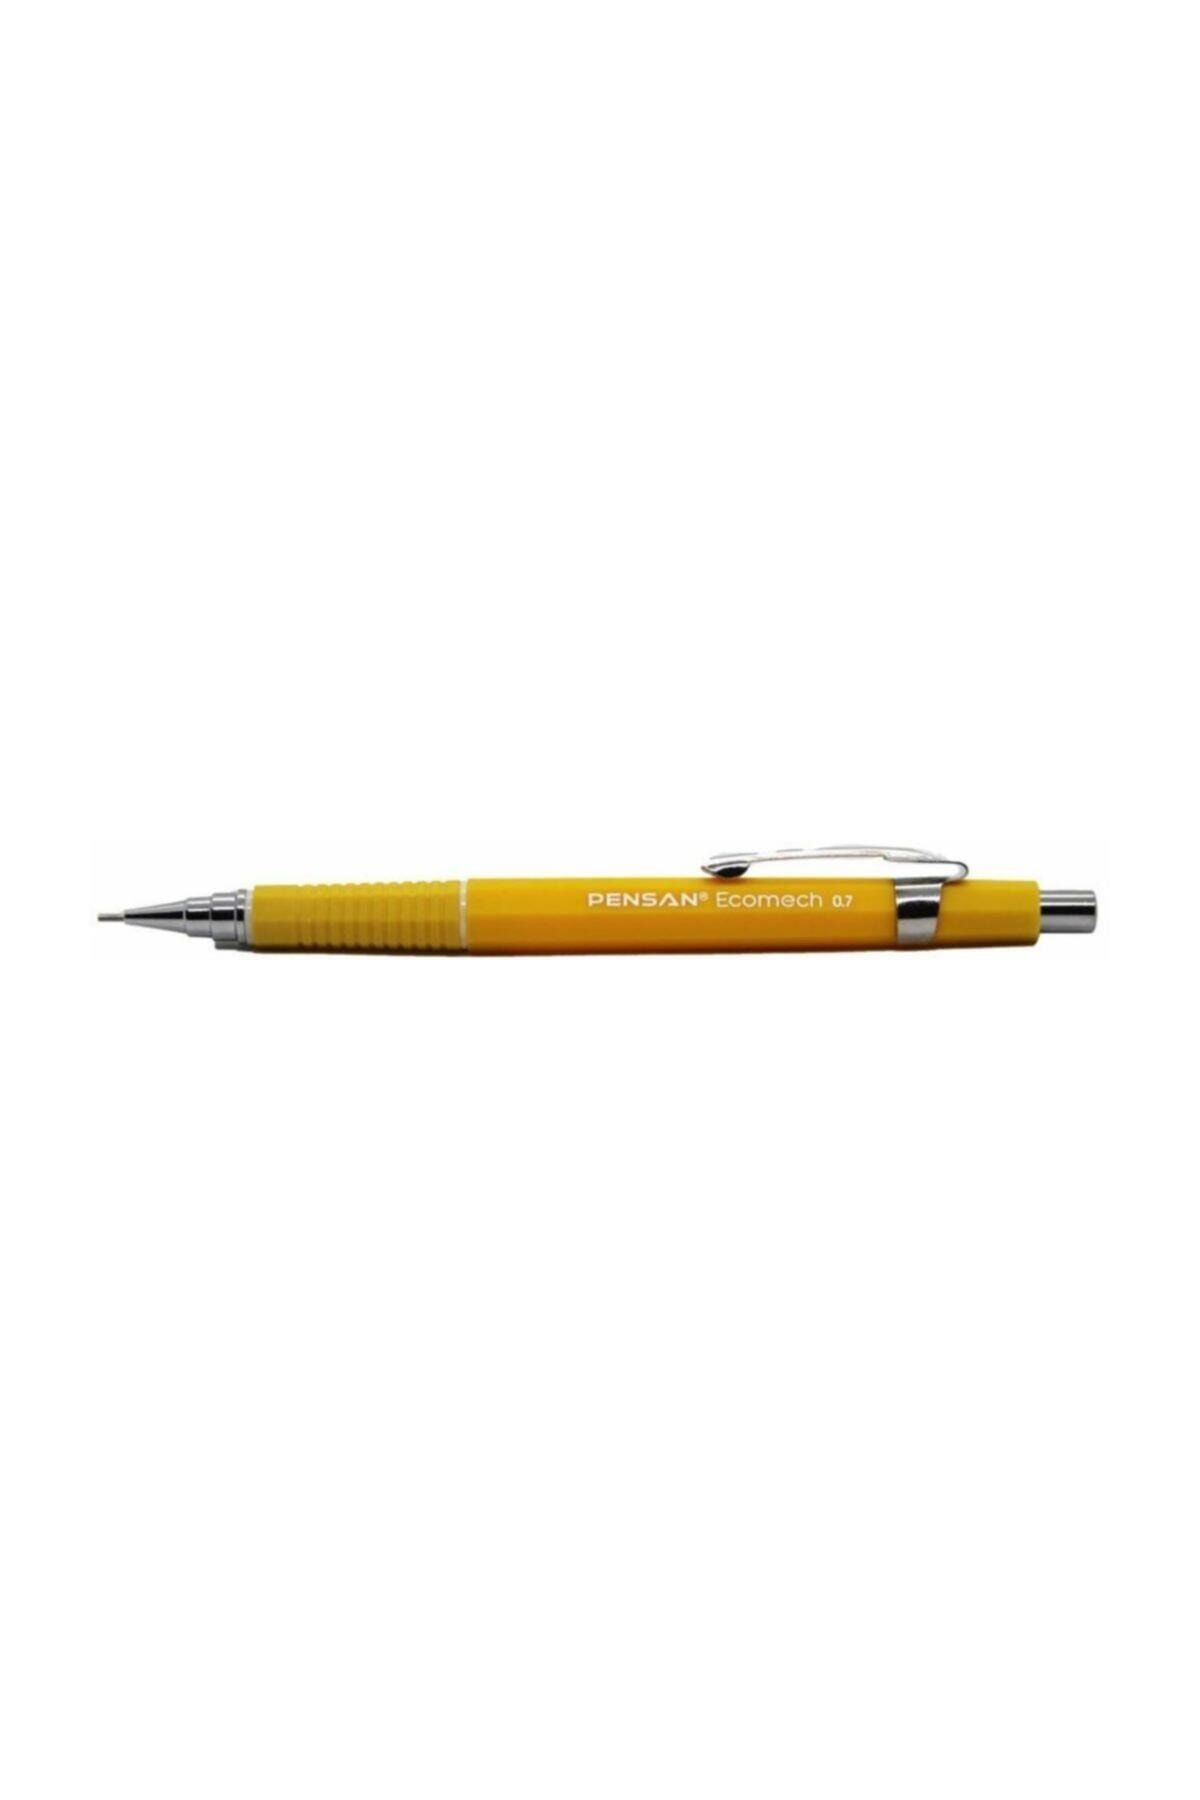 Pensan Ecomech Versatil Kalem Uç 0,7 Mm Sarı